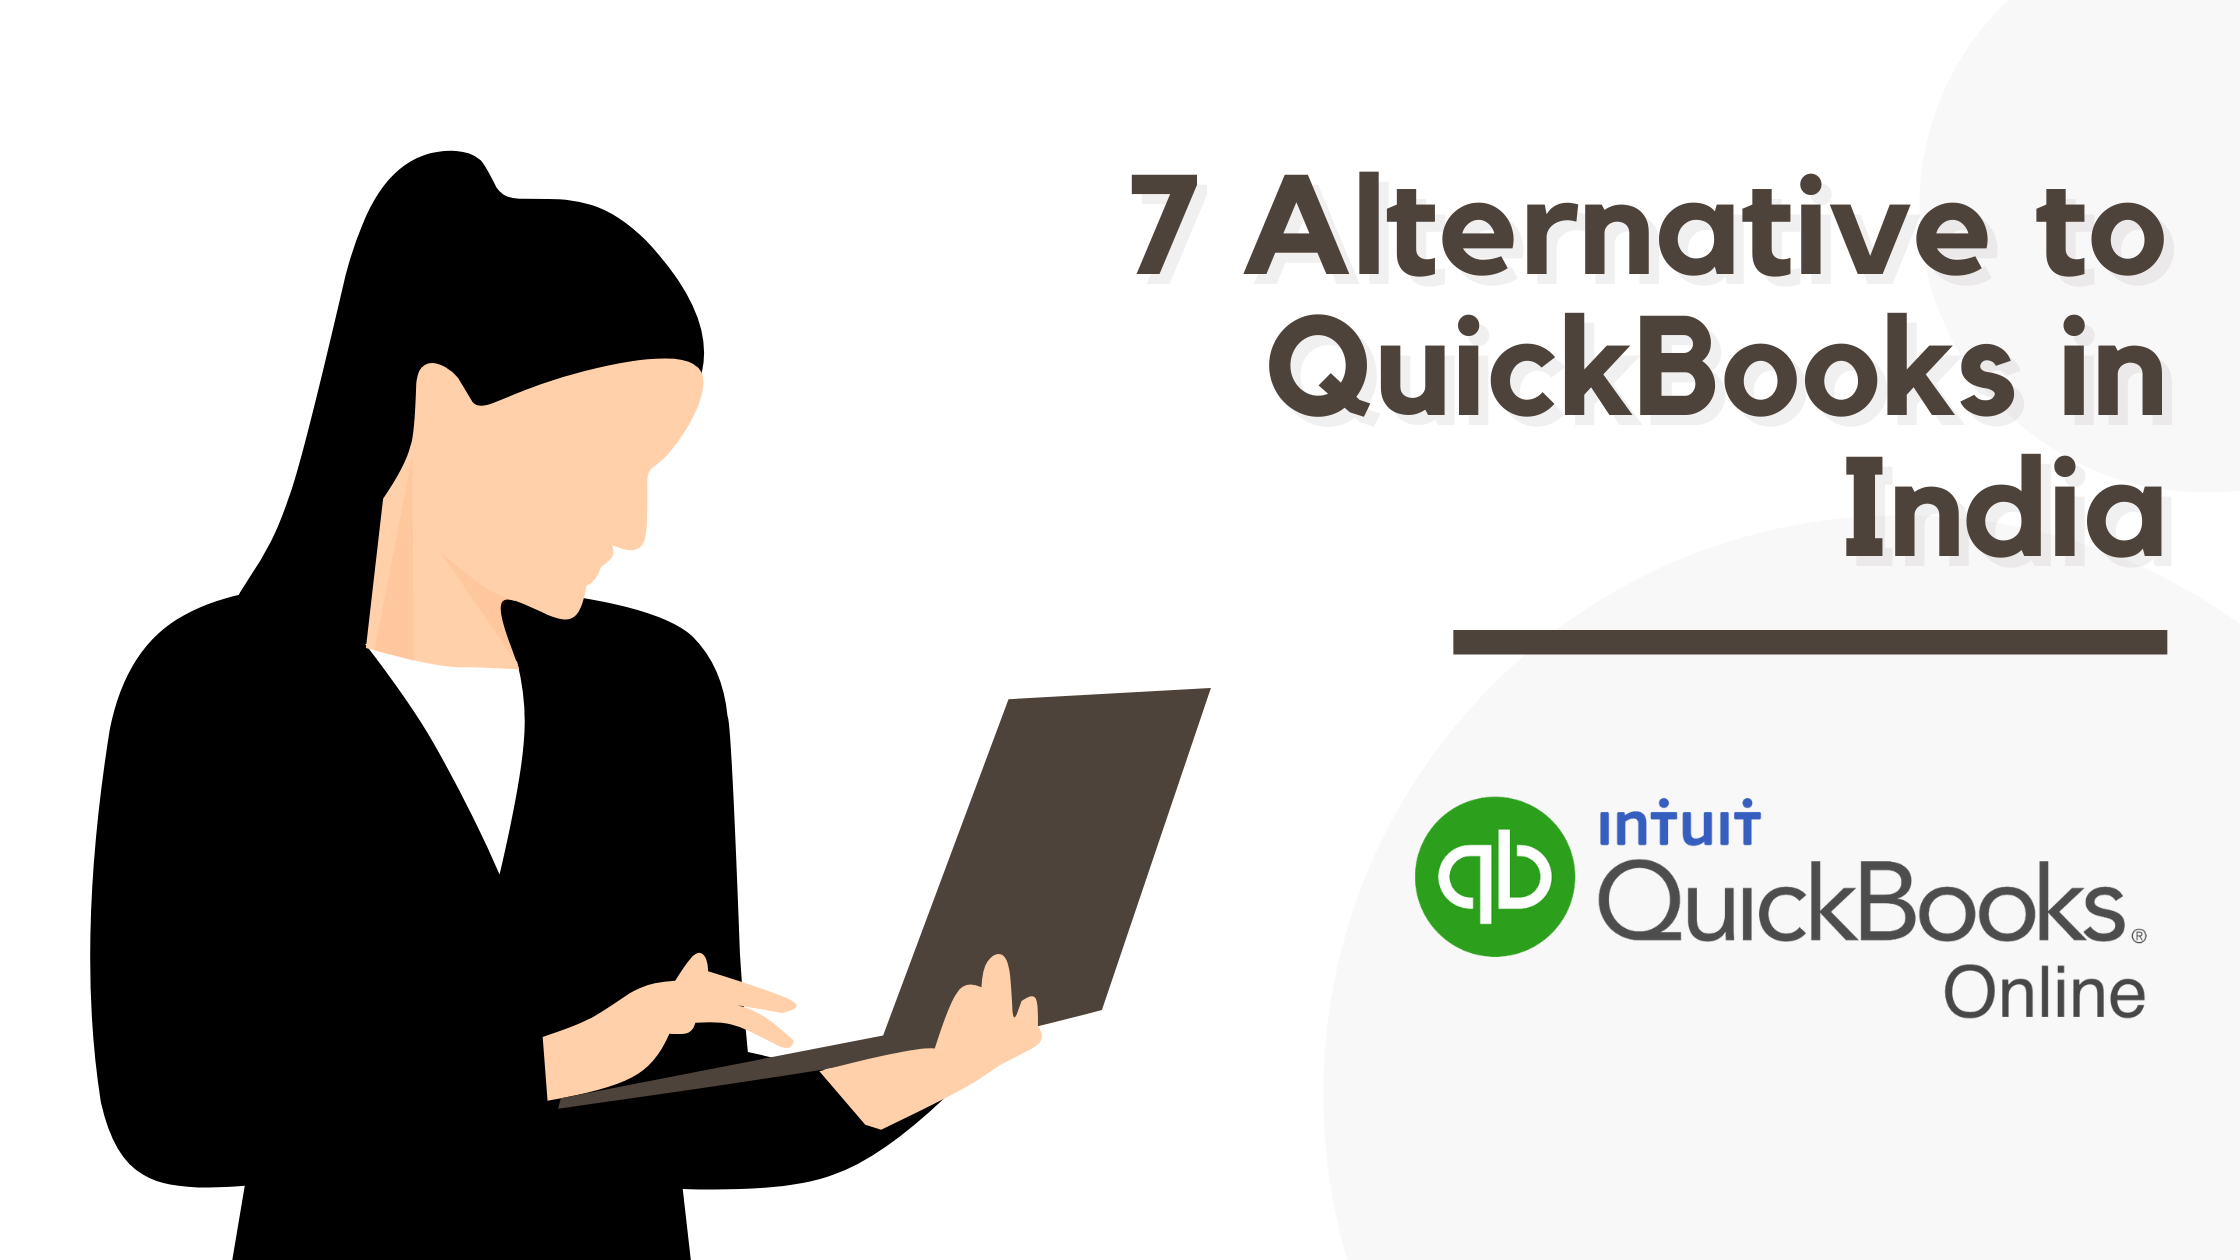 7 Alternative to QuickBooks in India